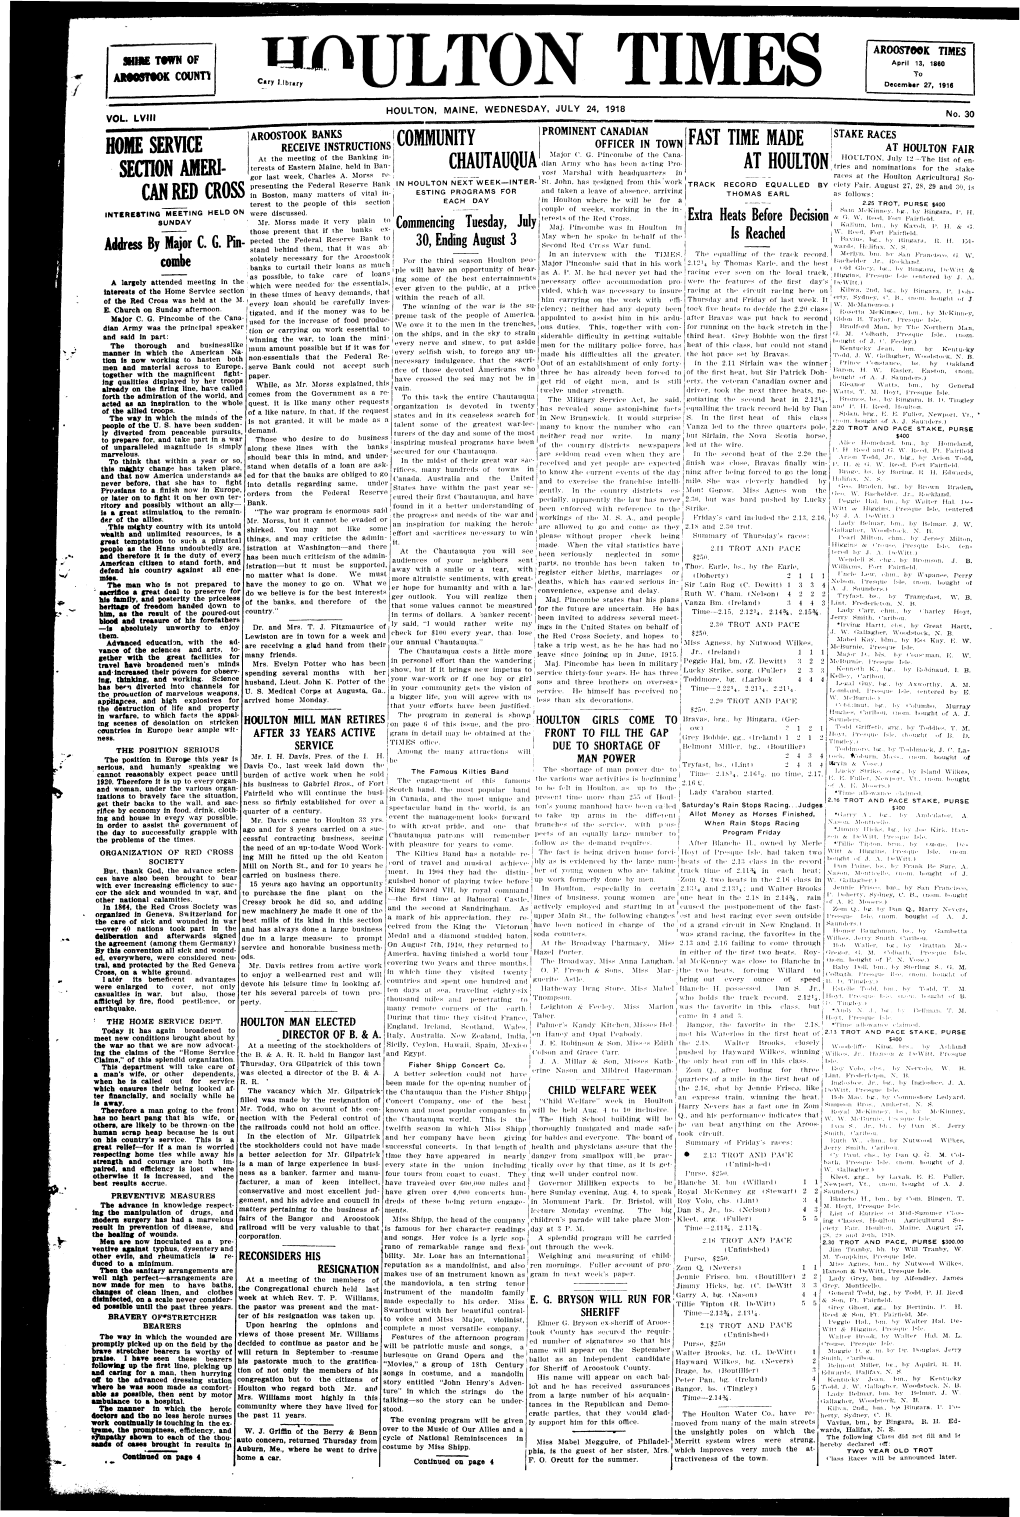 Houlton Times, July 31, 1918